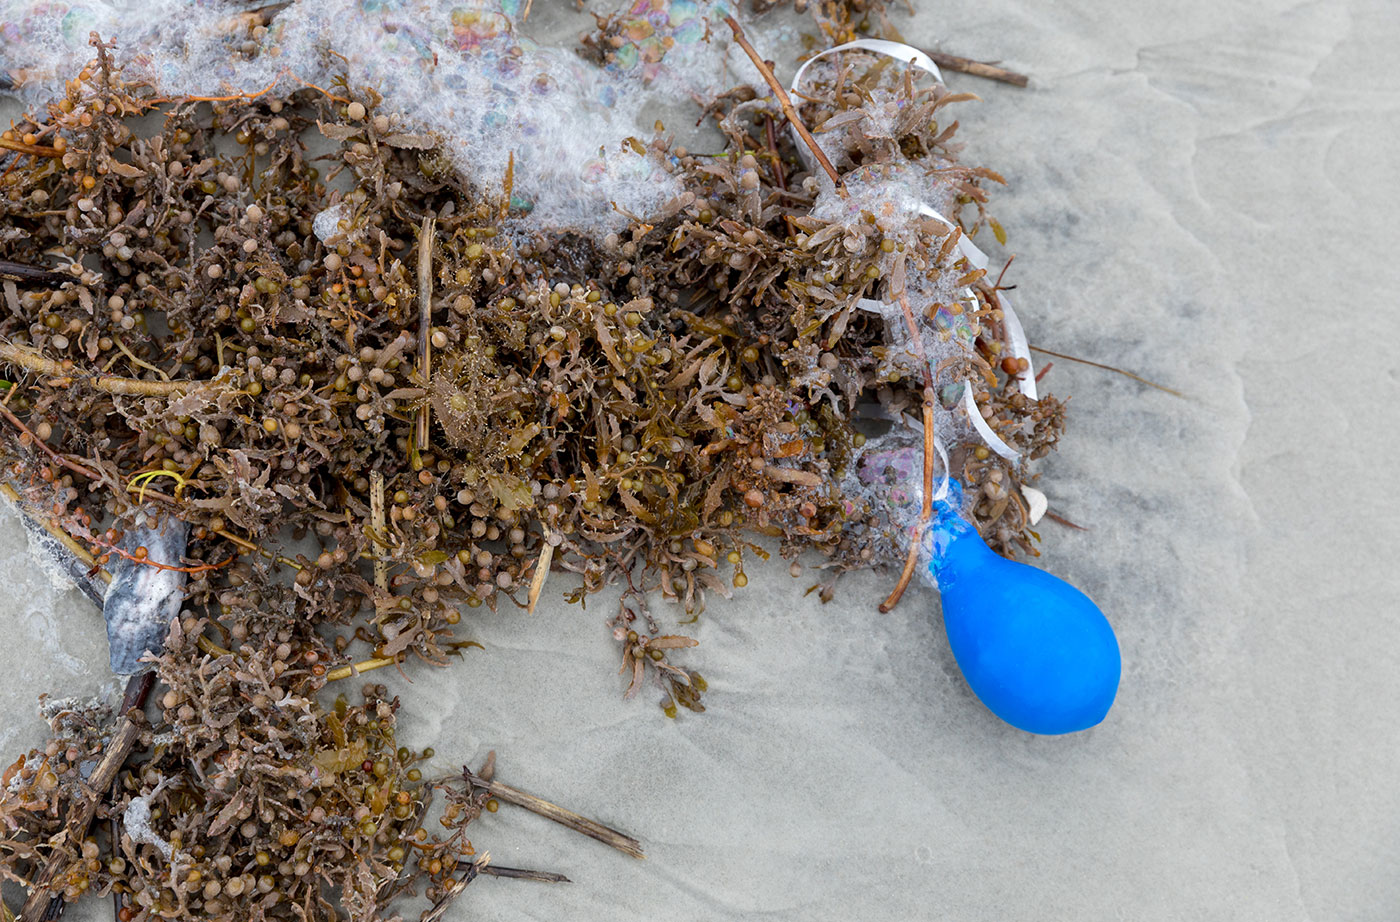 balloon litter on beach